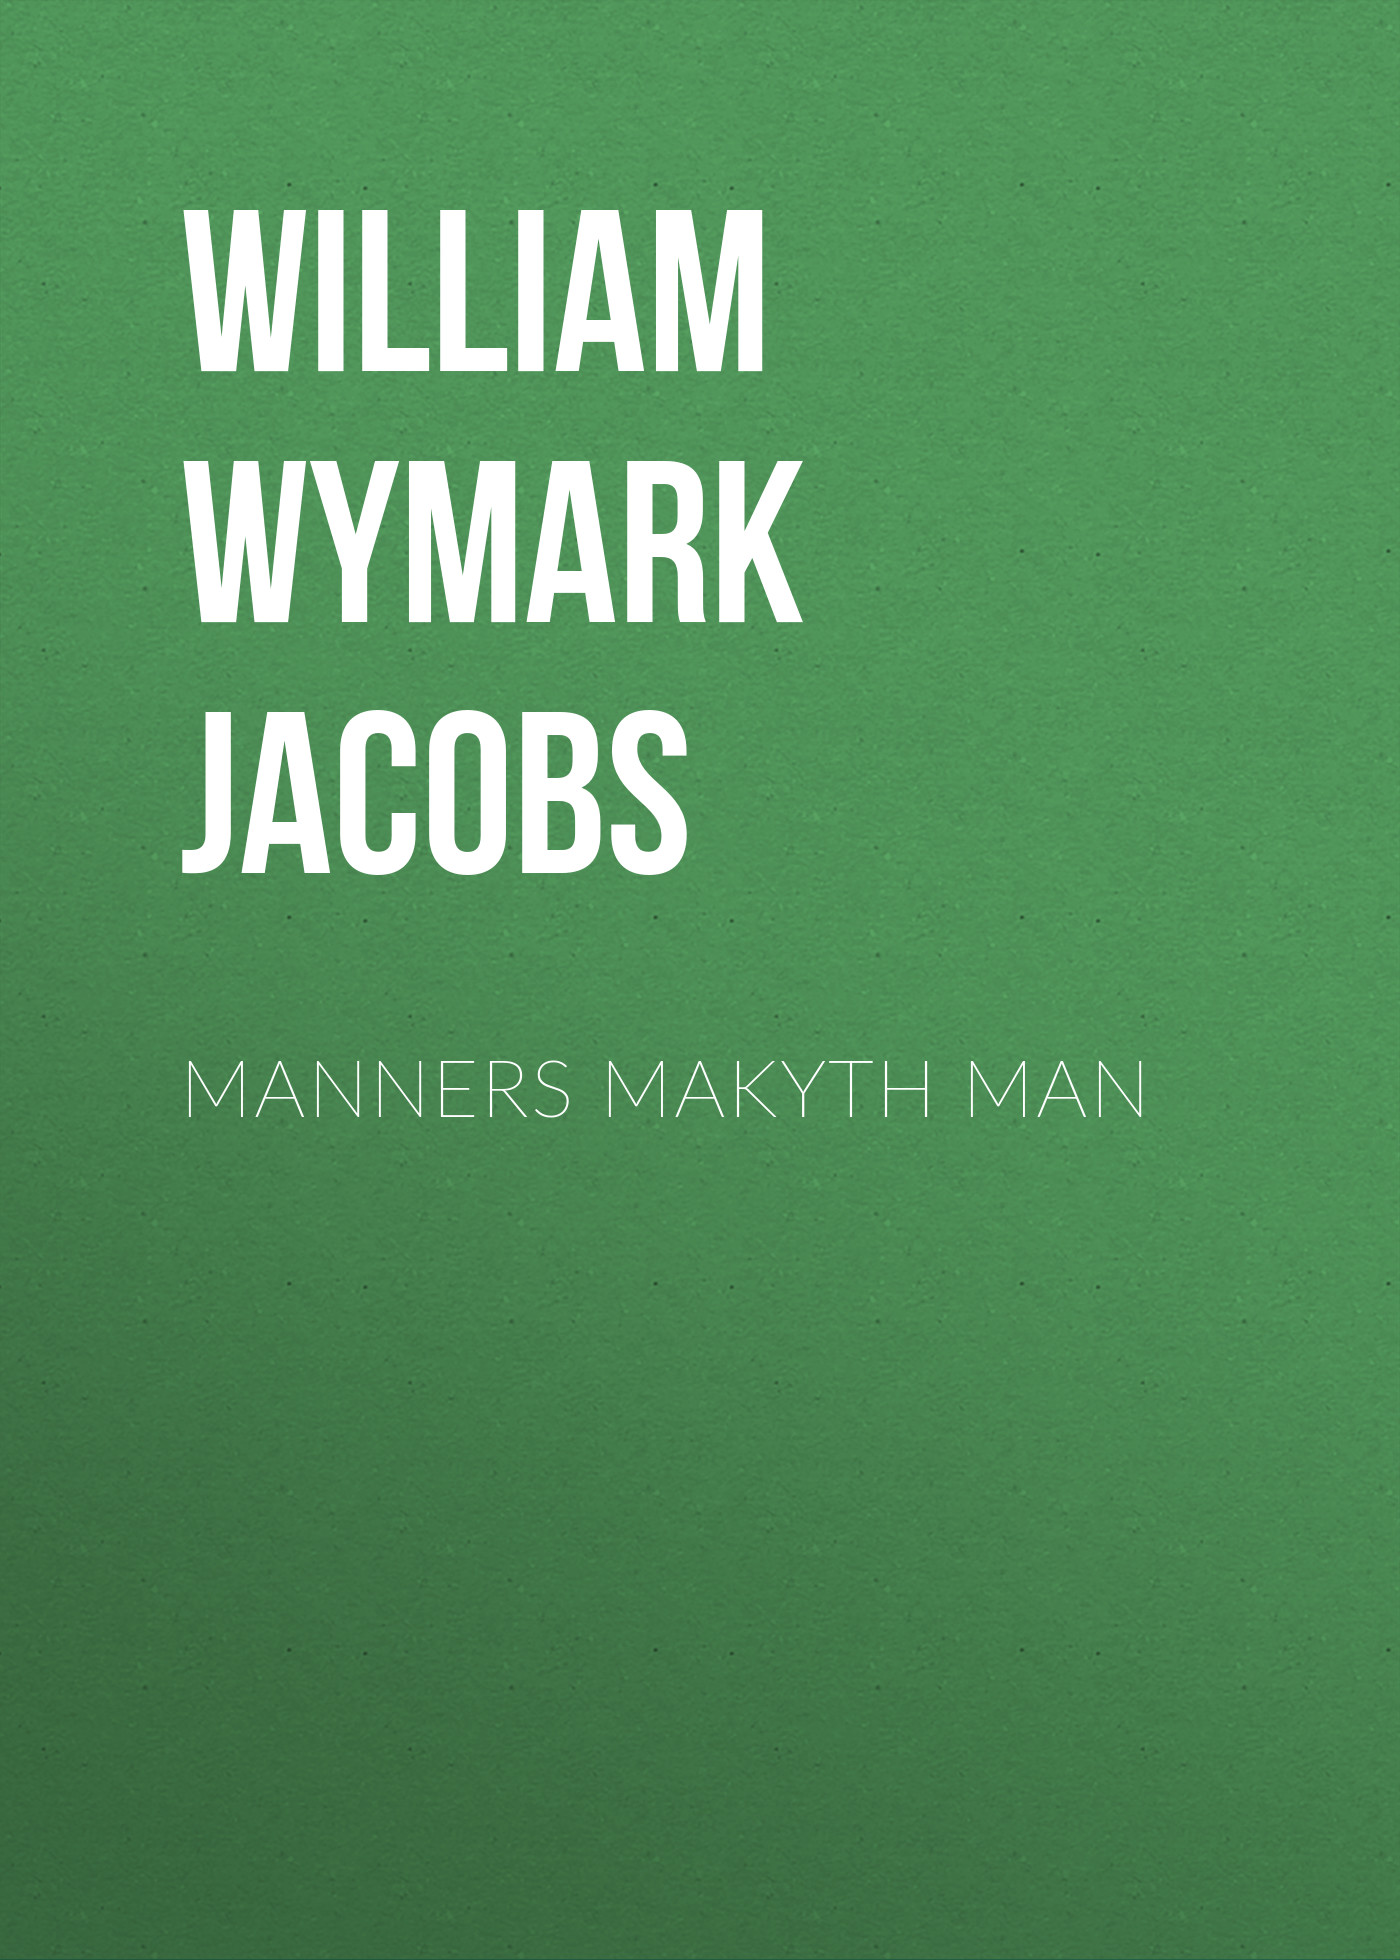 Книга Manners Makyth Man из серии , созданная William Wymark Jacobs, может относится к жанру Зарубежная классика, Зарубежная старинная литература. Стоимость электронной книги Manners Makyth Man с идентификатором 34841726 составляет 0 руб.